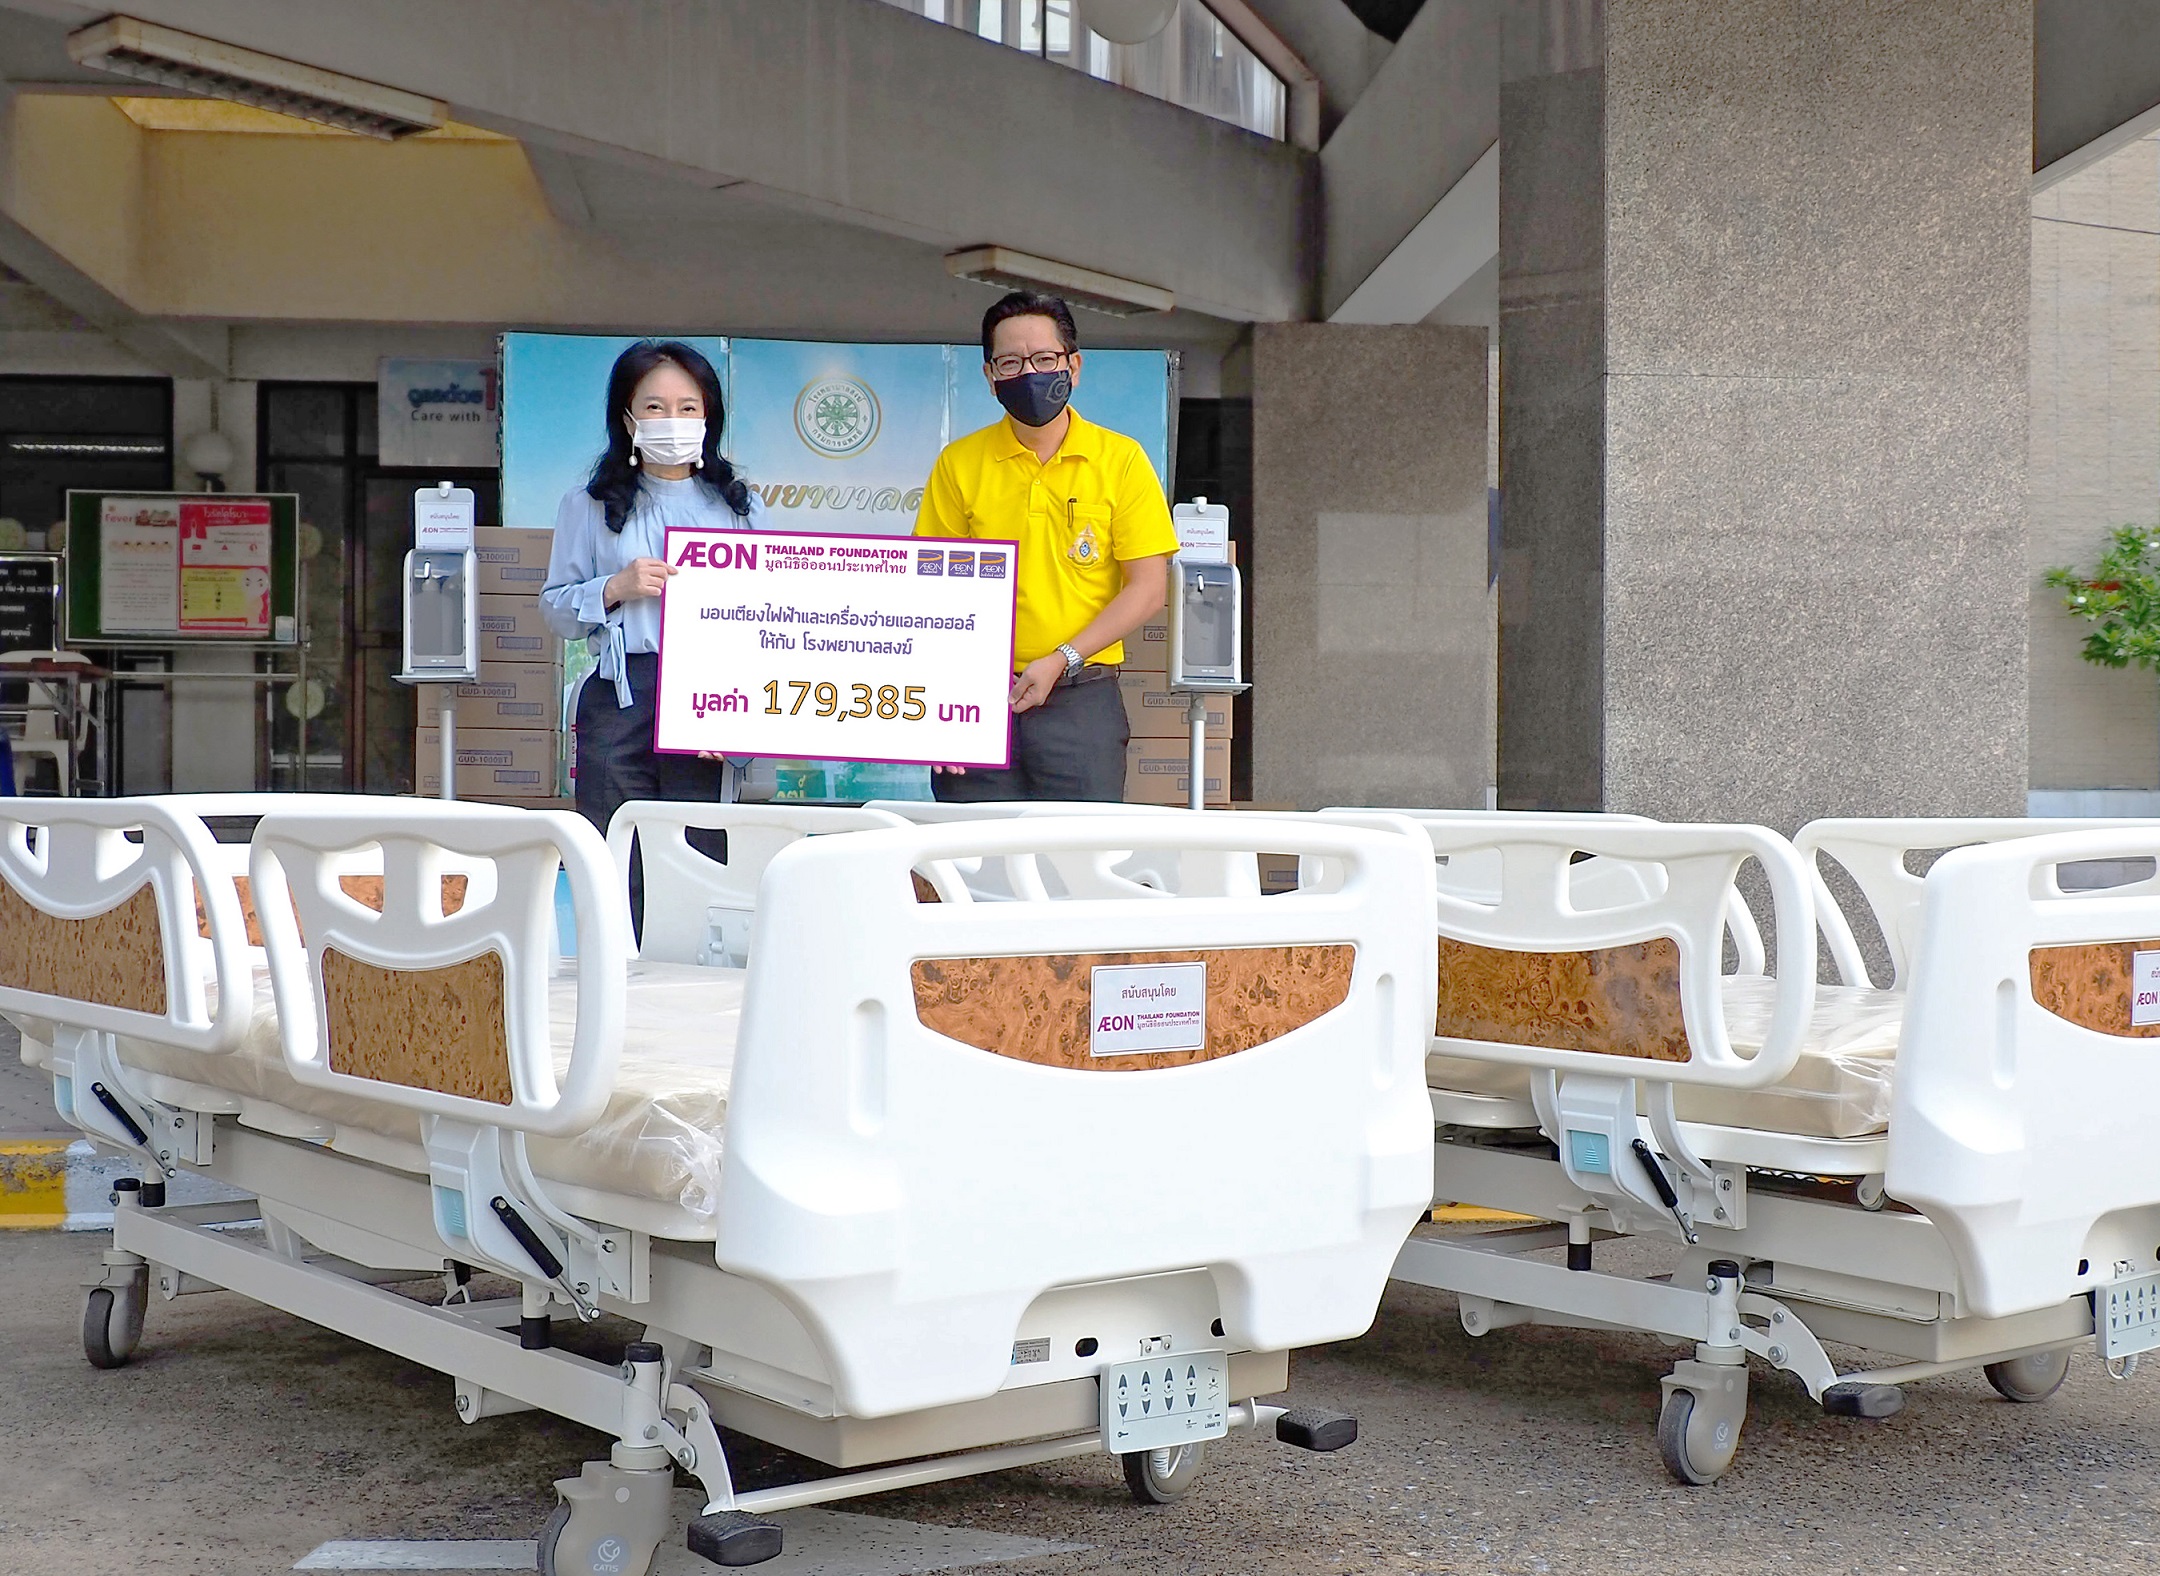 ภาพข่าว : มูลนิธิอิออนประเทศไทย มอบเตียงคนไข้ระบบไฟฟ้า และเครื่องจ่ายแอลกอฮอล์อัตโนมัติให้แก่โรงพยาบาลสงฆ์